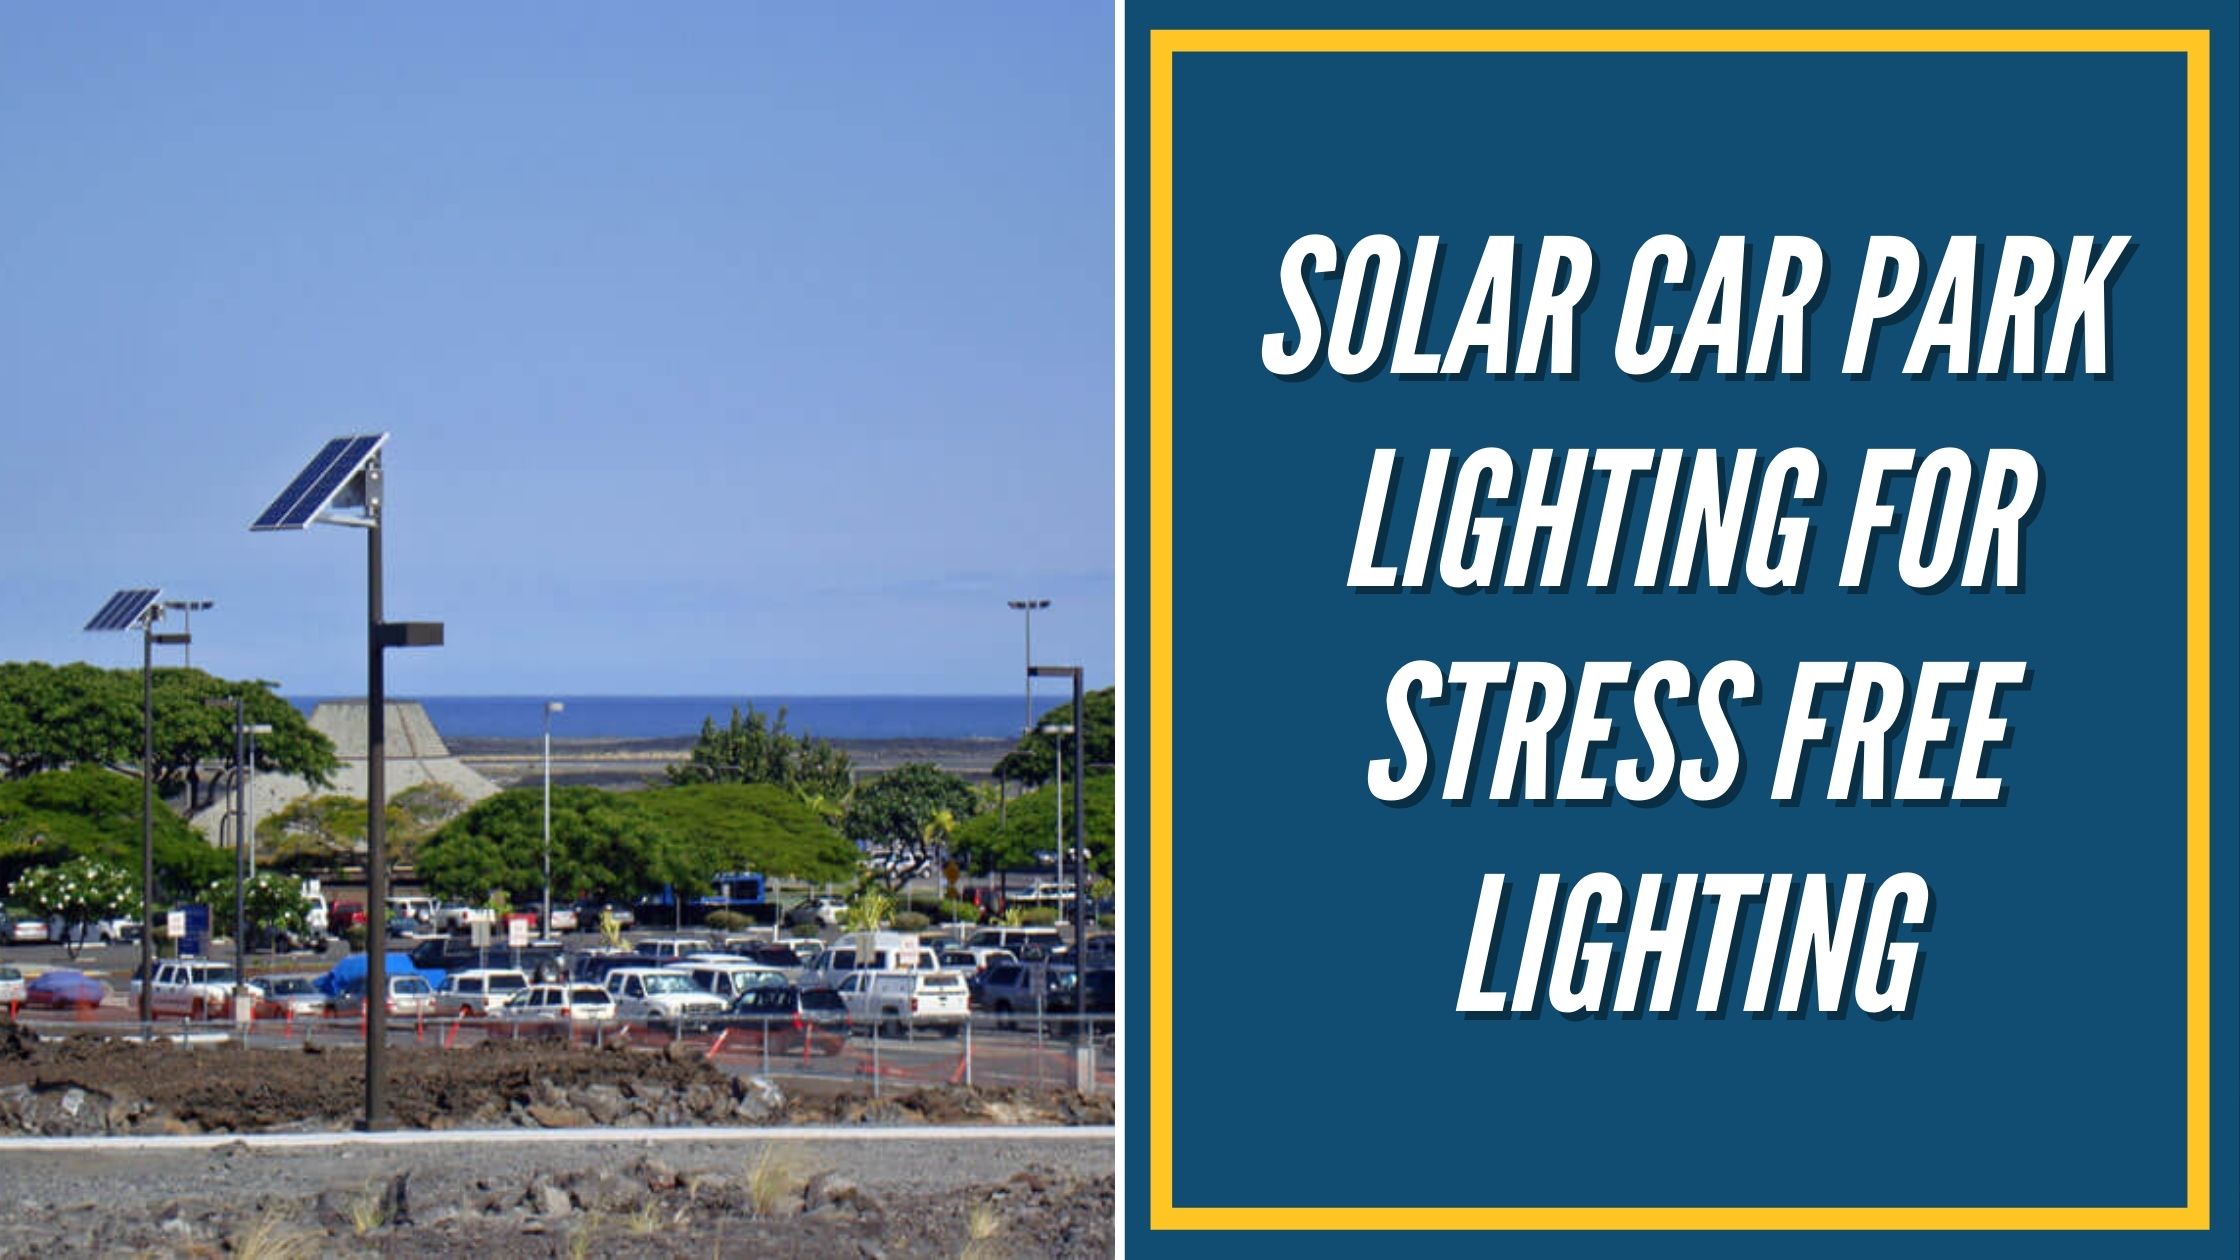 Solar Car Park Lighting for Stress Free Lighting